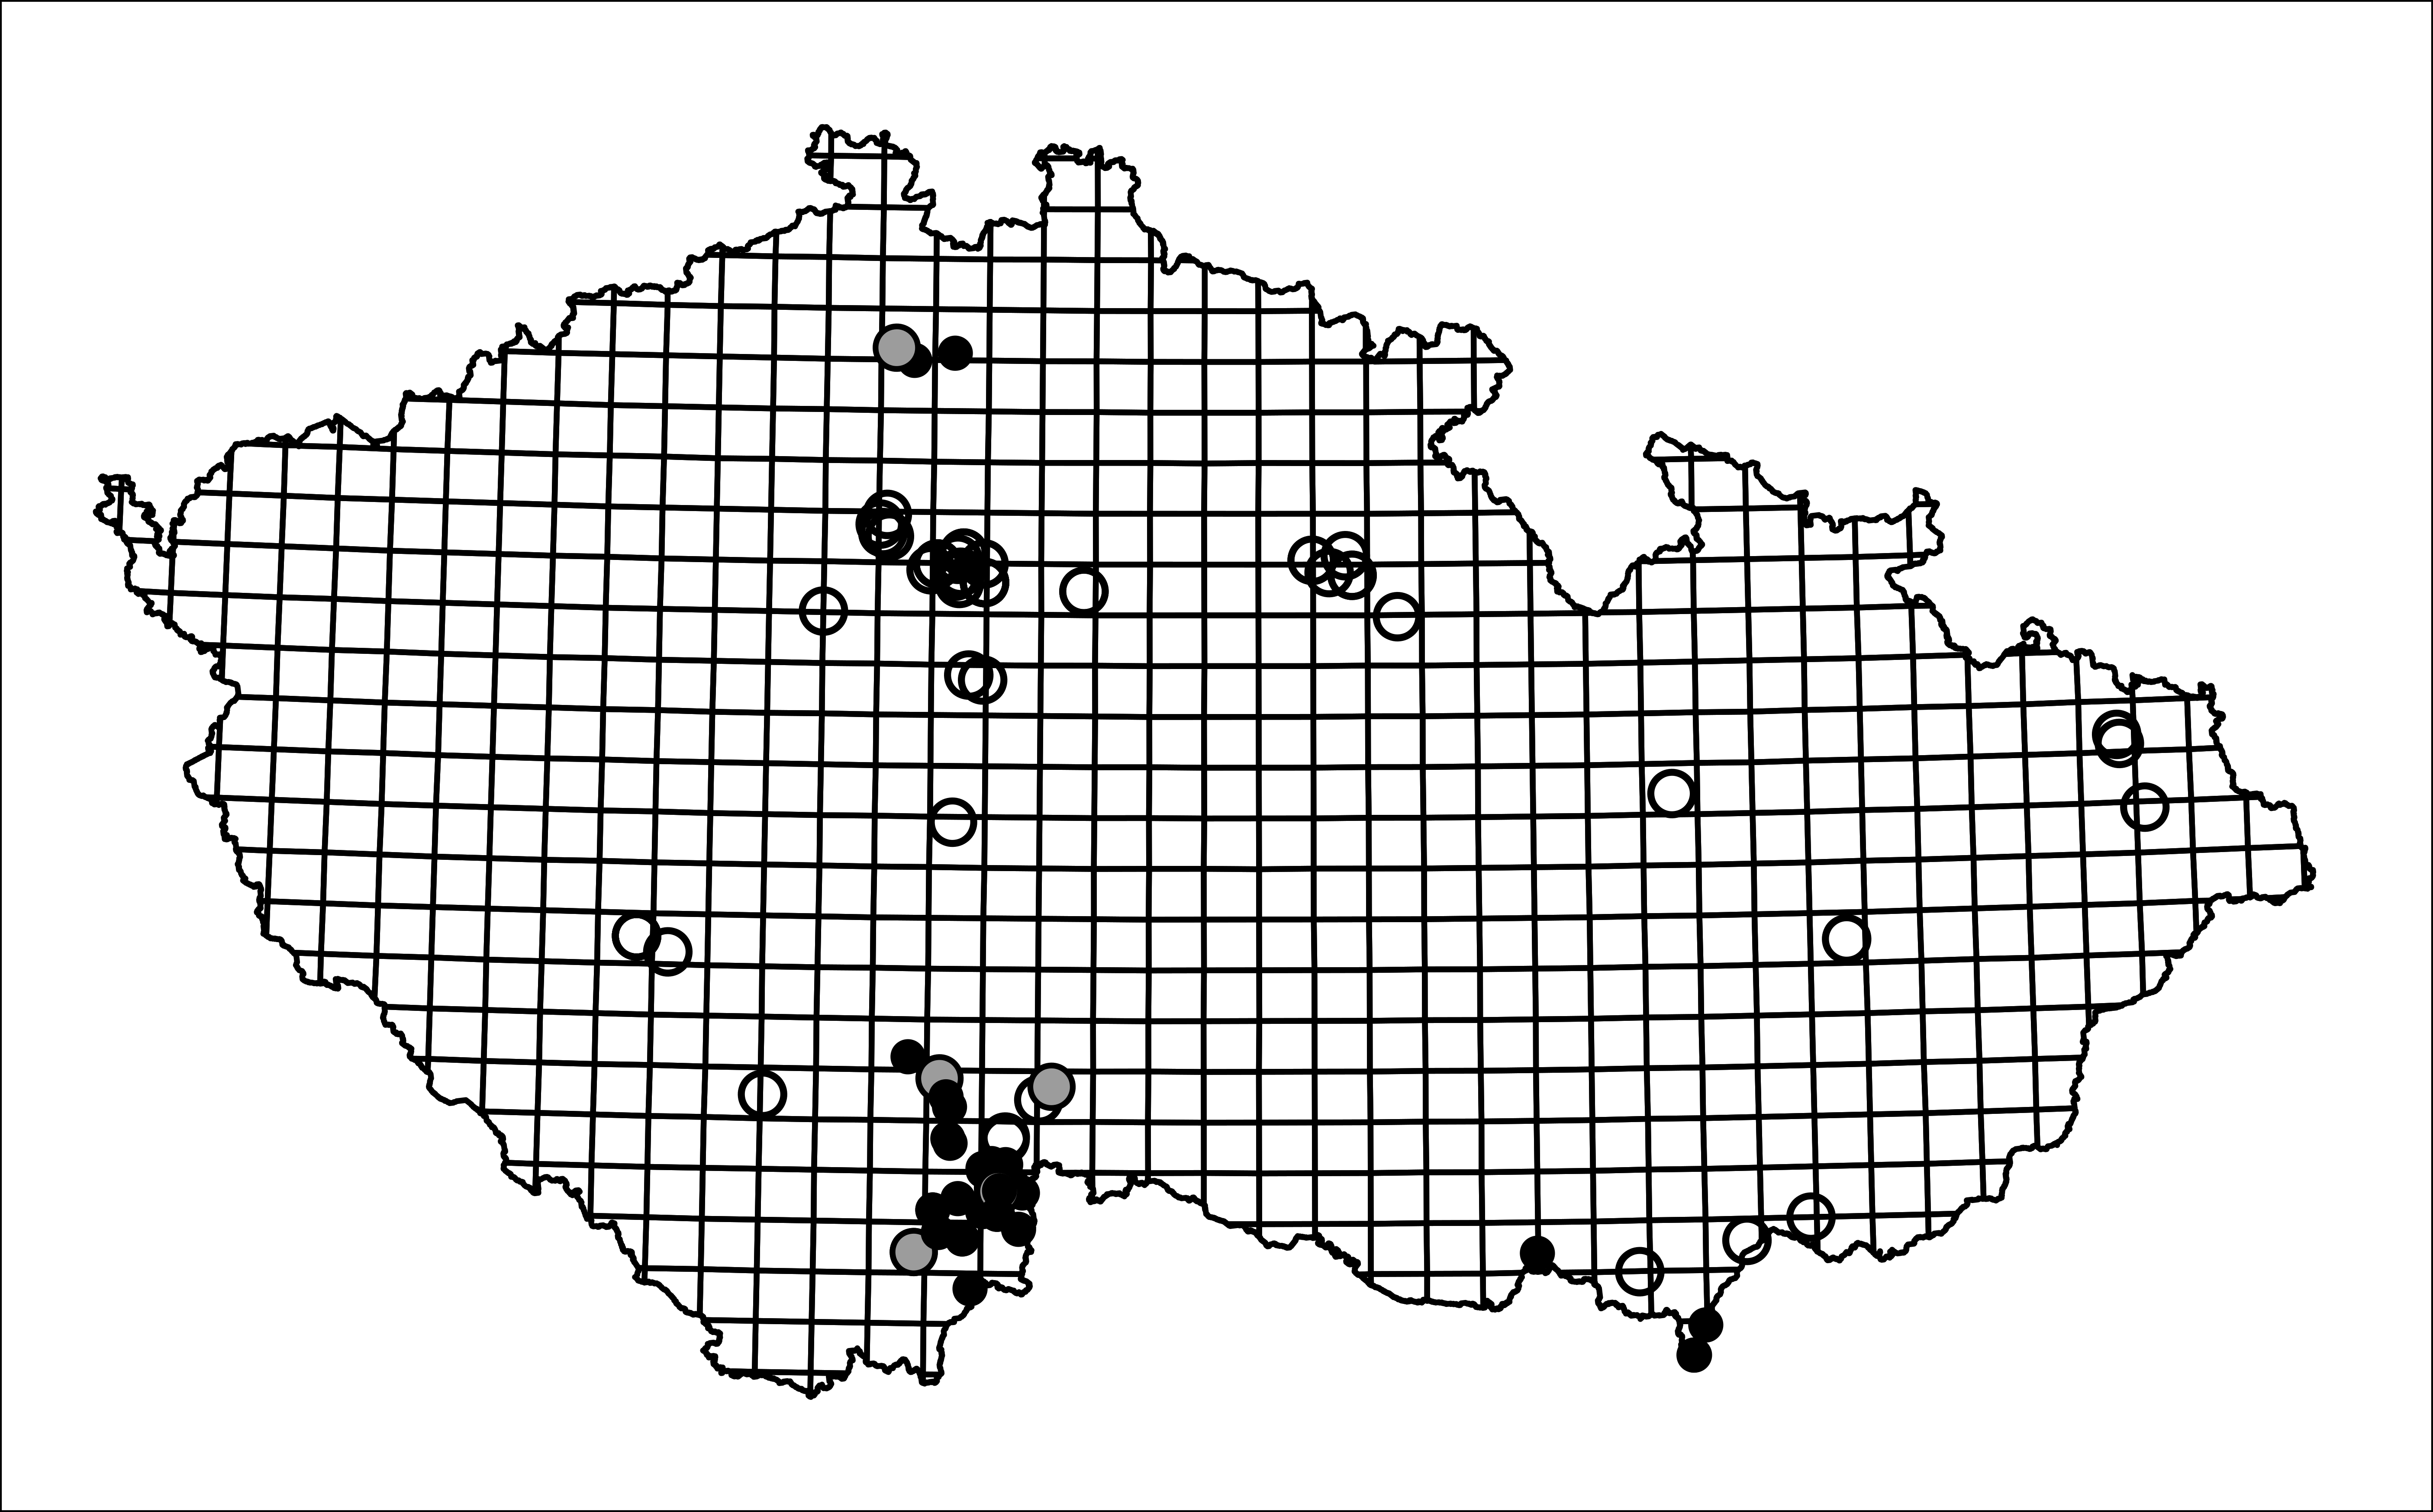 Obr. 2: Historická a aktuální mapa rozšíření potápníka dvojčárého. Černá kolečka = recentní údaje od roku 2000, šedá kolečka = údaje mezi roky 1960-2000, a prázdná kolečka = údaje do roku 1960. Mapa převzata a upravena podle Kolar & Boukal (2020).